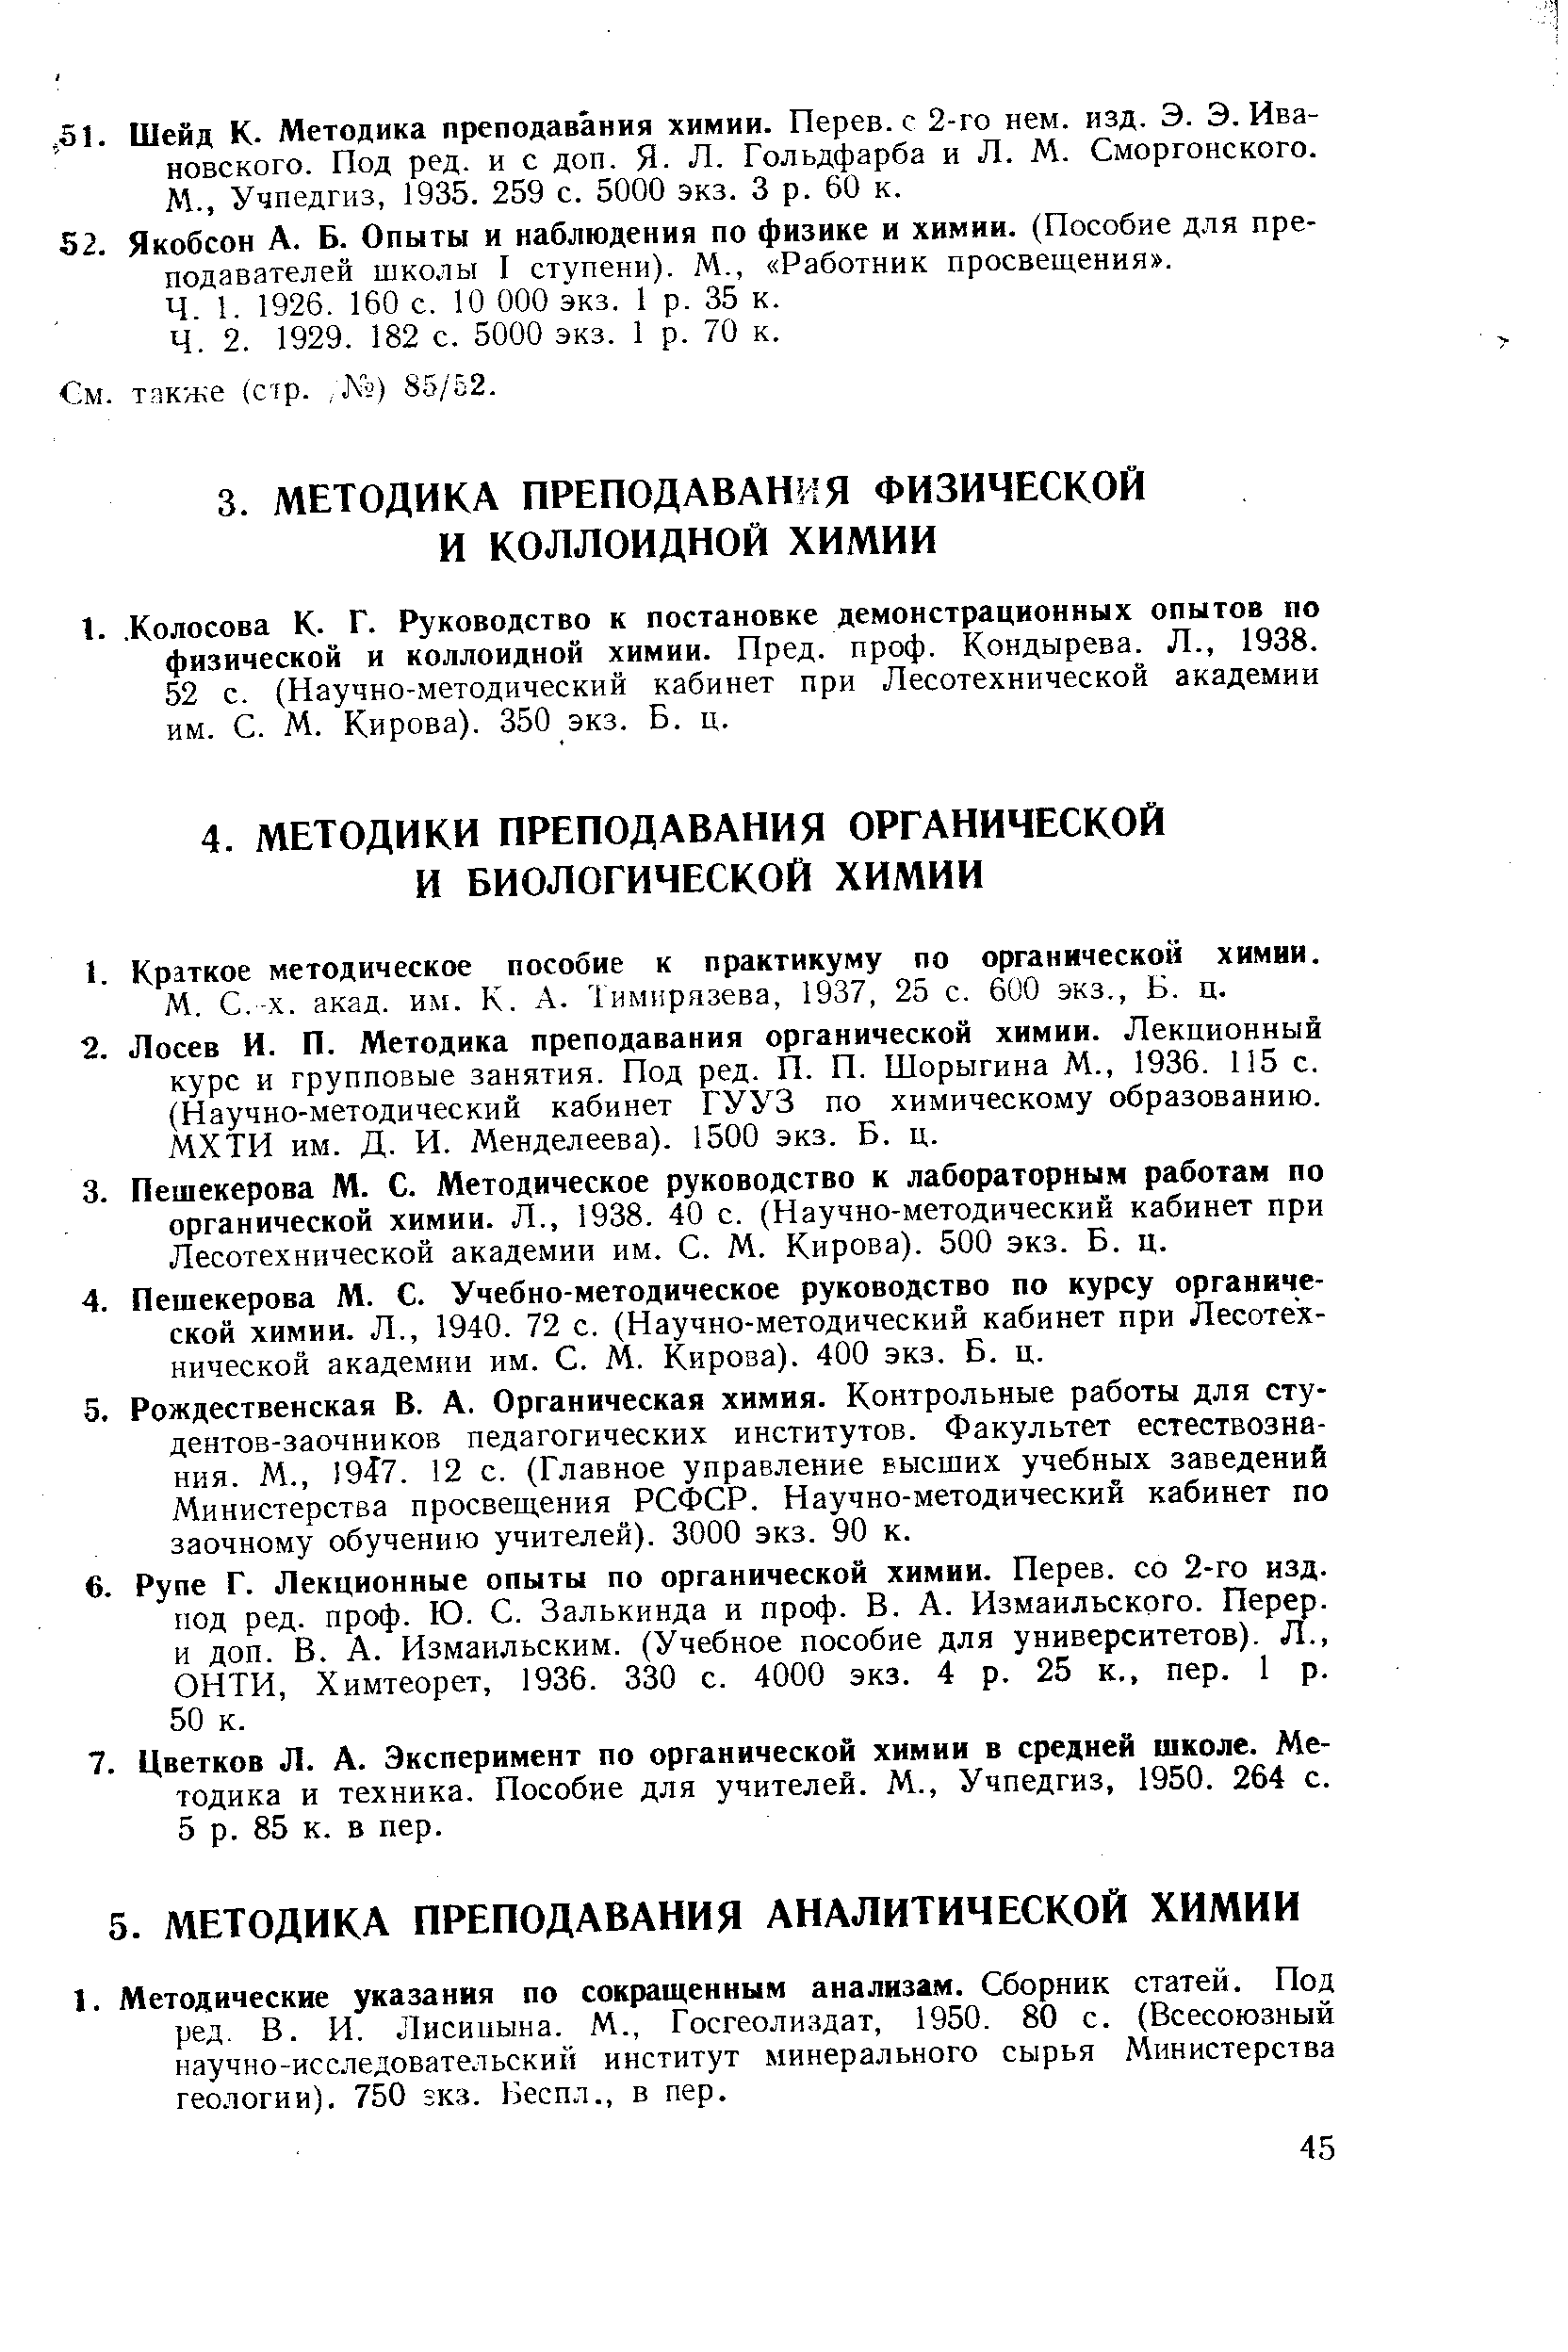 Тимирязева, 1937, 25 с. 6U0 экз., Б. ц.